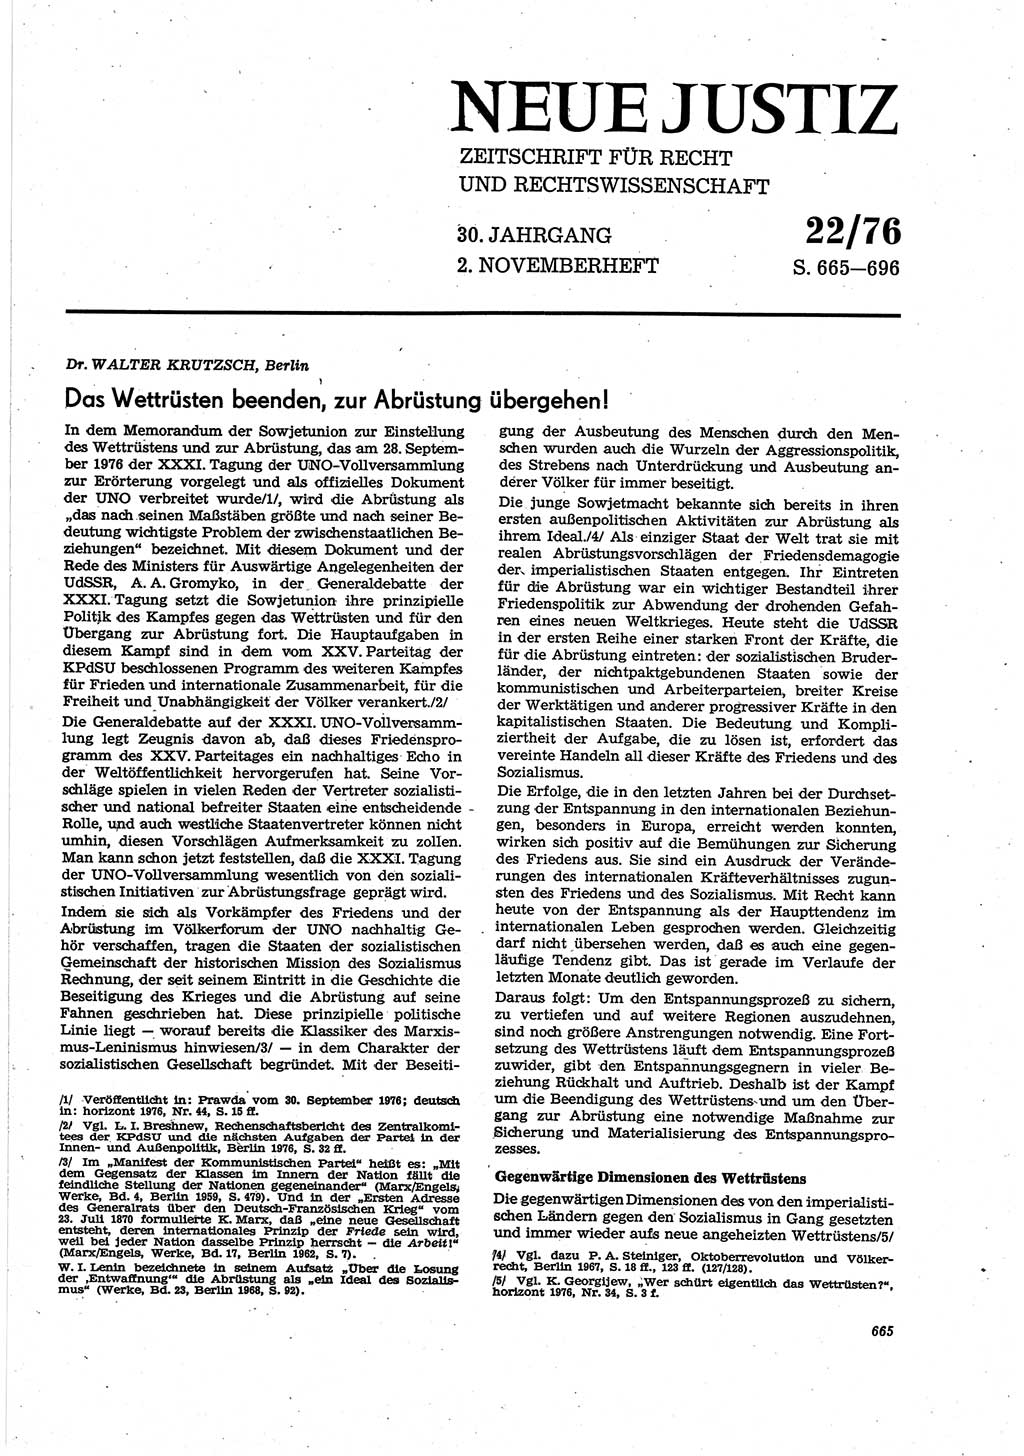 Neue Justiz (NJ), Zeitschrift für Recht und Rechtswissenschaft [Deutsche Demokratische Republik (DDR)], 30. Jahrgang 1976, Seite 665 (NJ DDR 1976, S. 665)